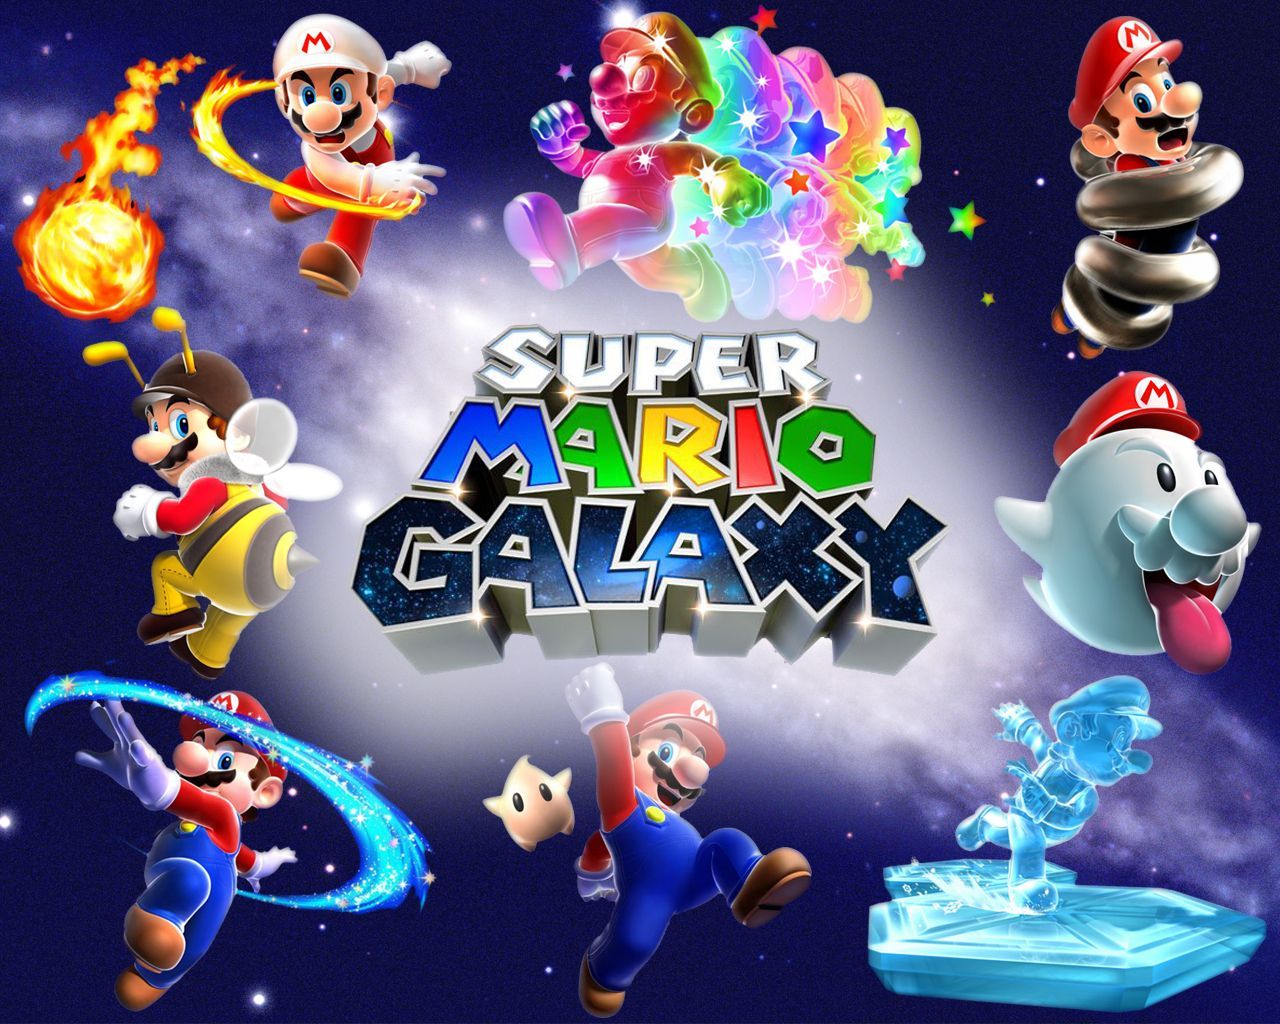 SUPER MARIO GALAXY. Super mario galaxy, Super mario, Super mario games